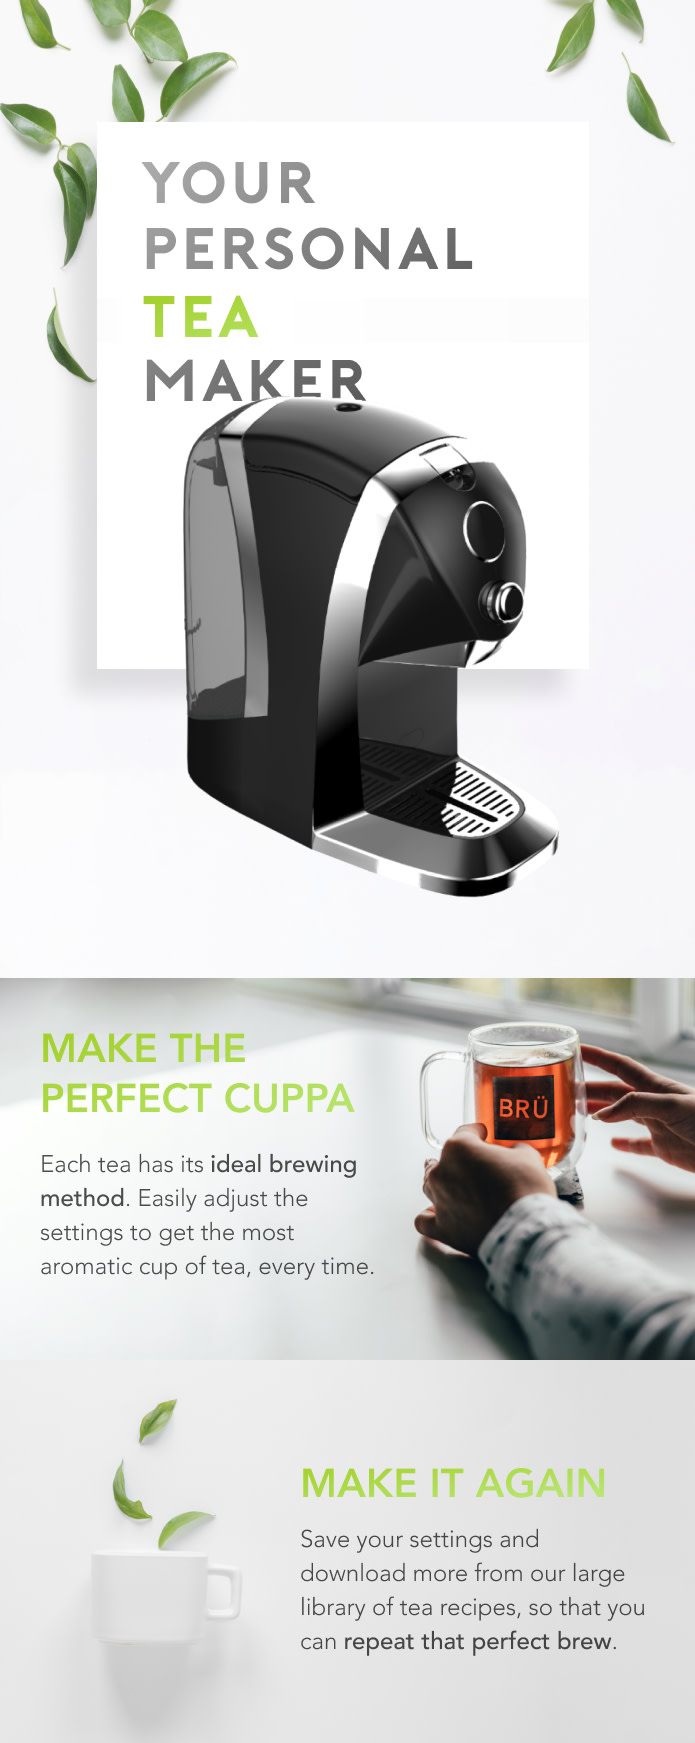 BRU: The Ultimate Tea Machine